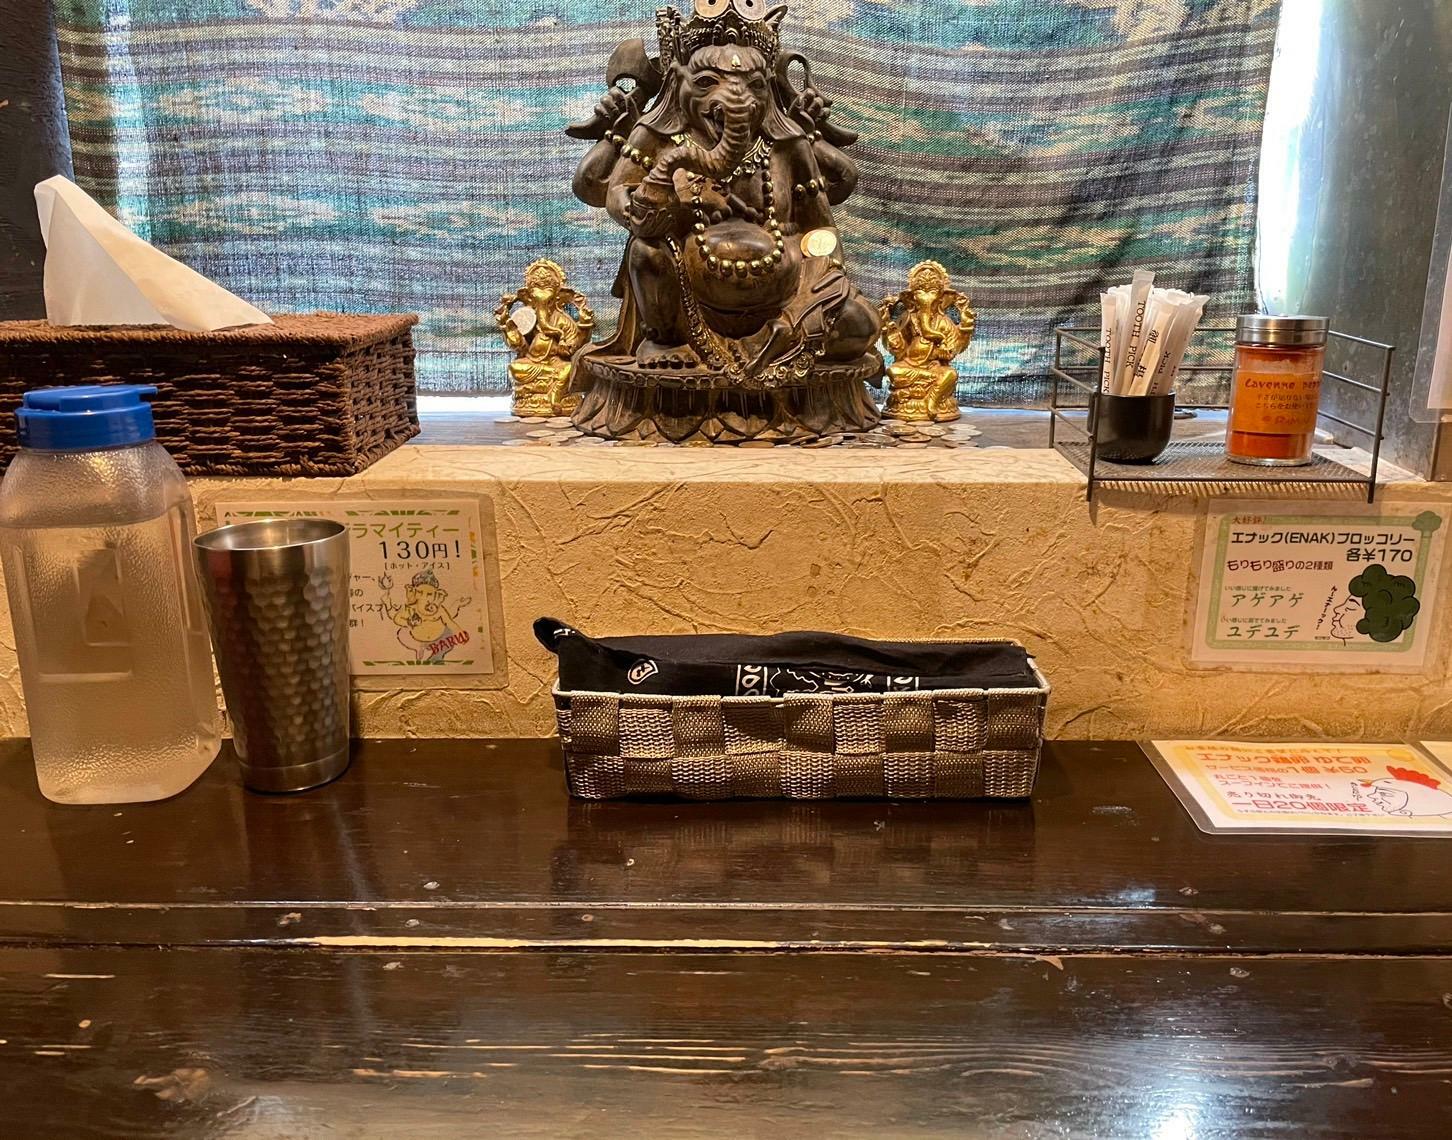 インドの神様 ガネーシャ像が鎮座